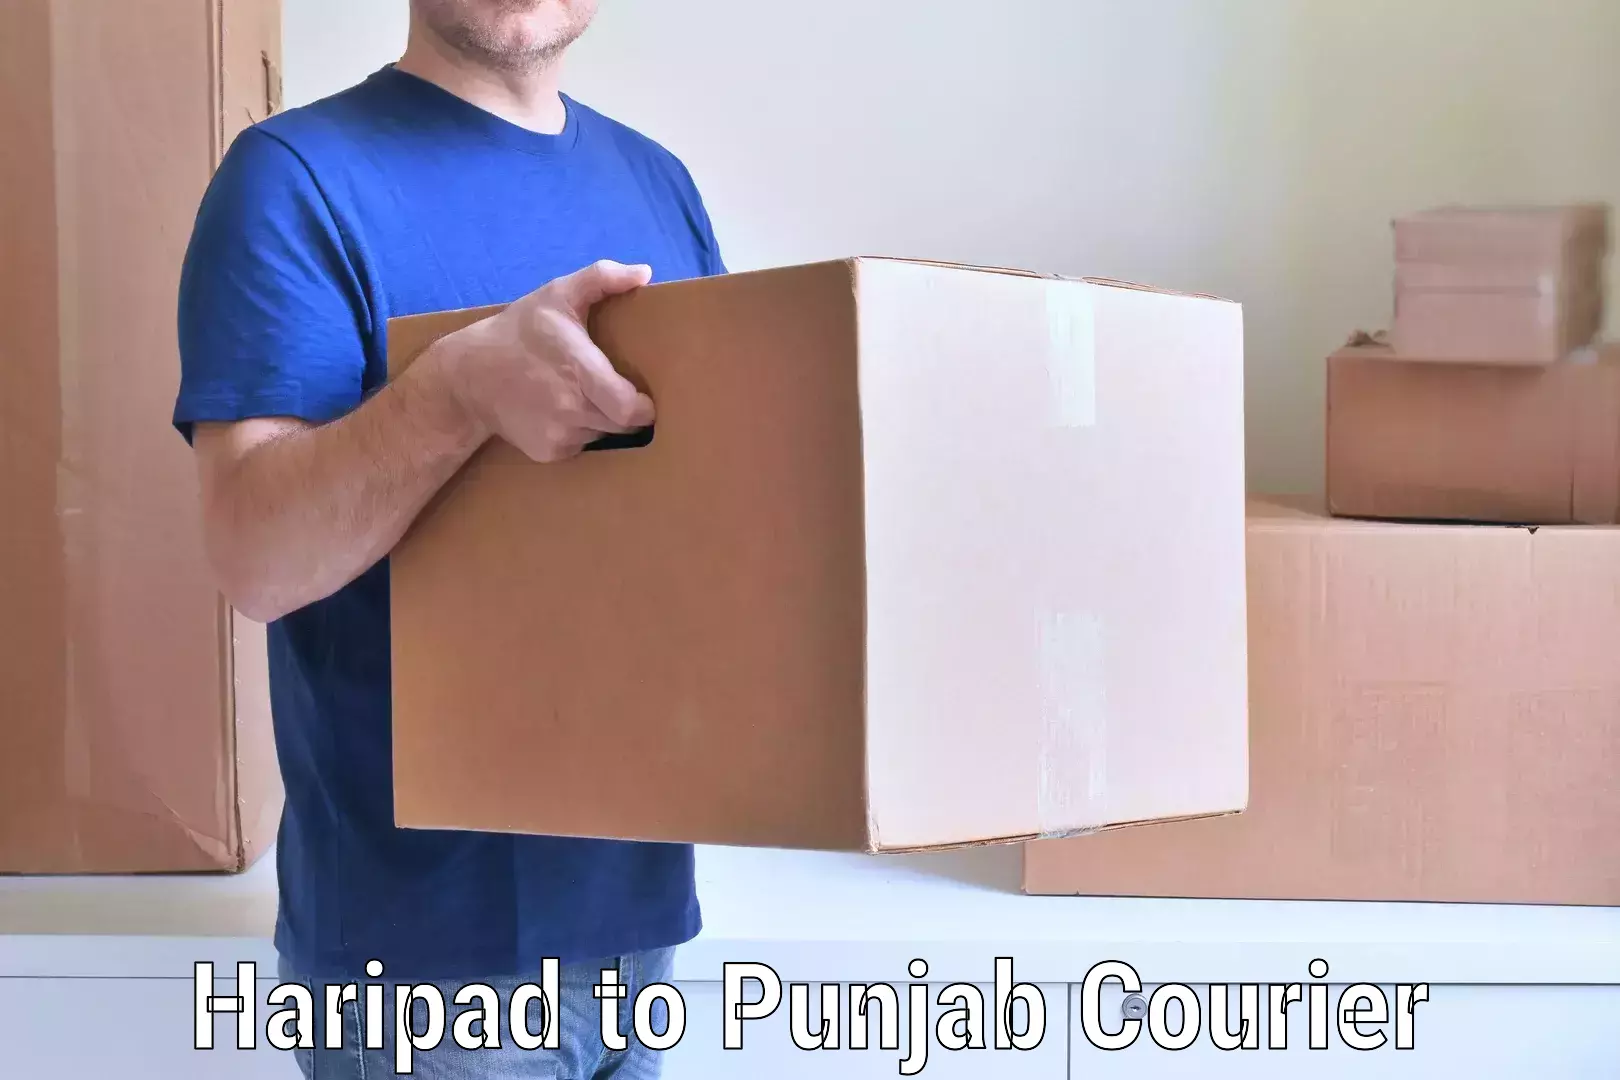 Full-service movers in Haripad to Punjab